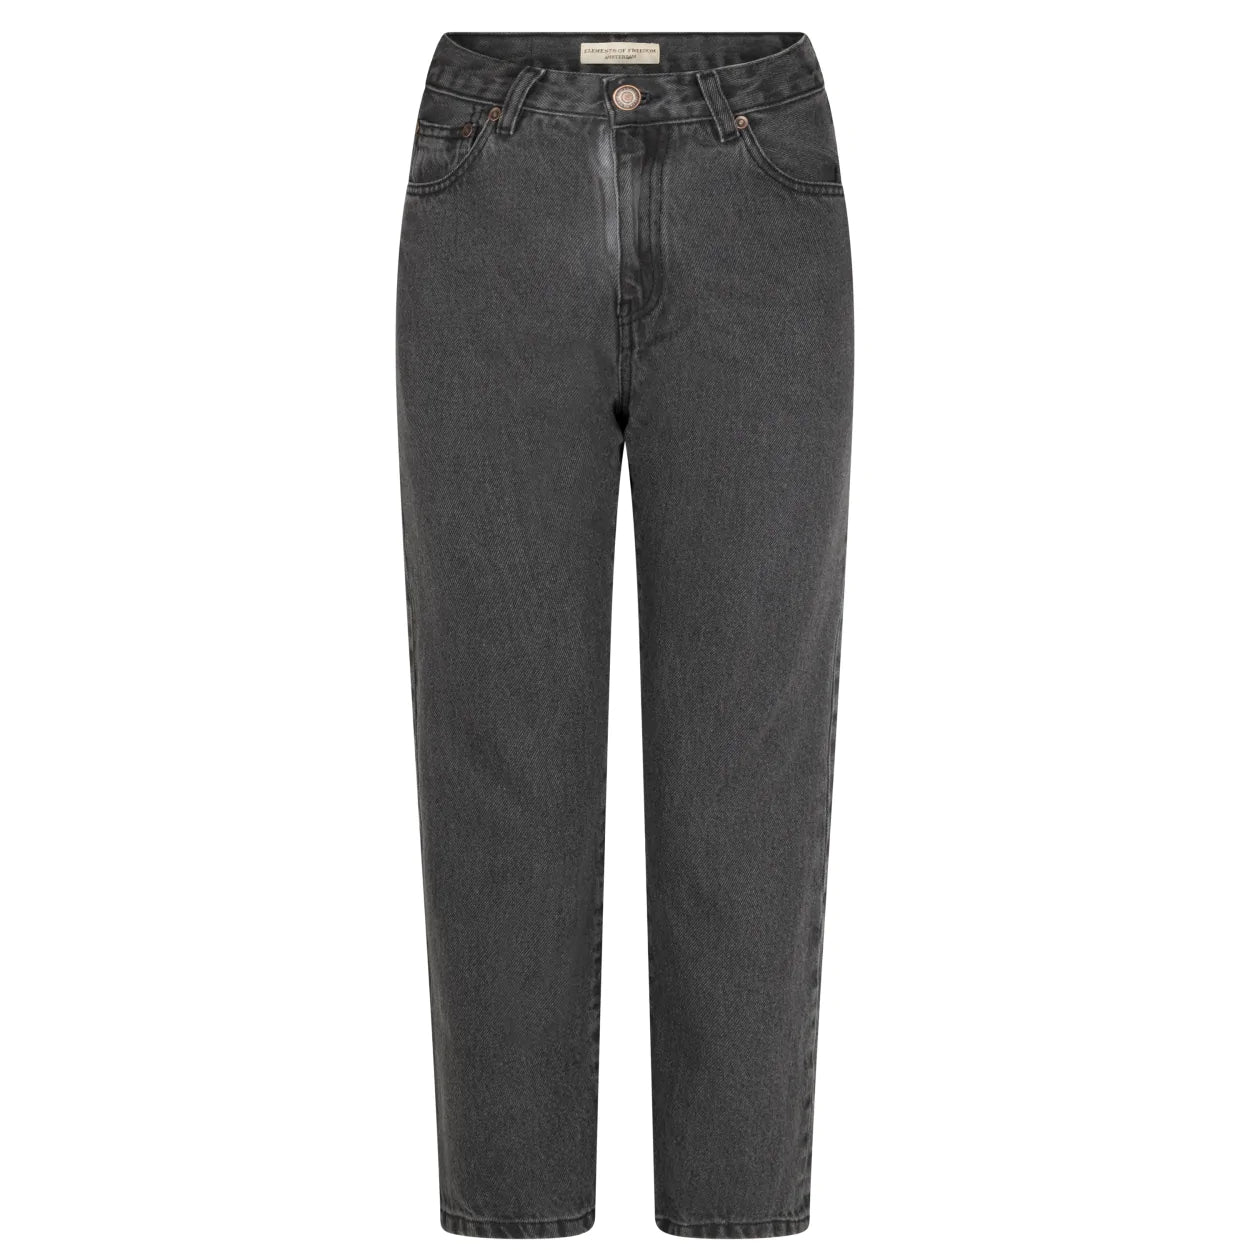 Eden jeans high waist dark grey